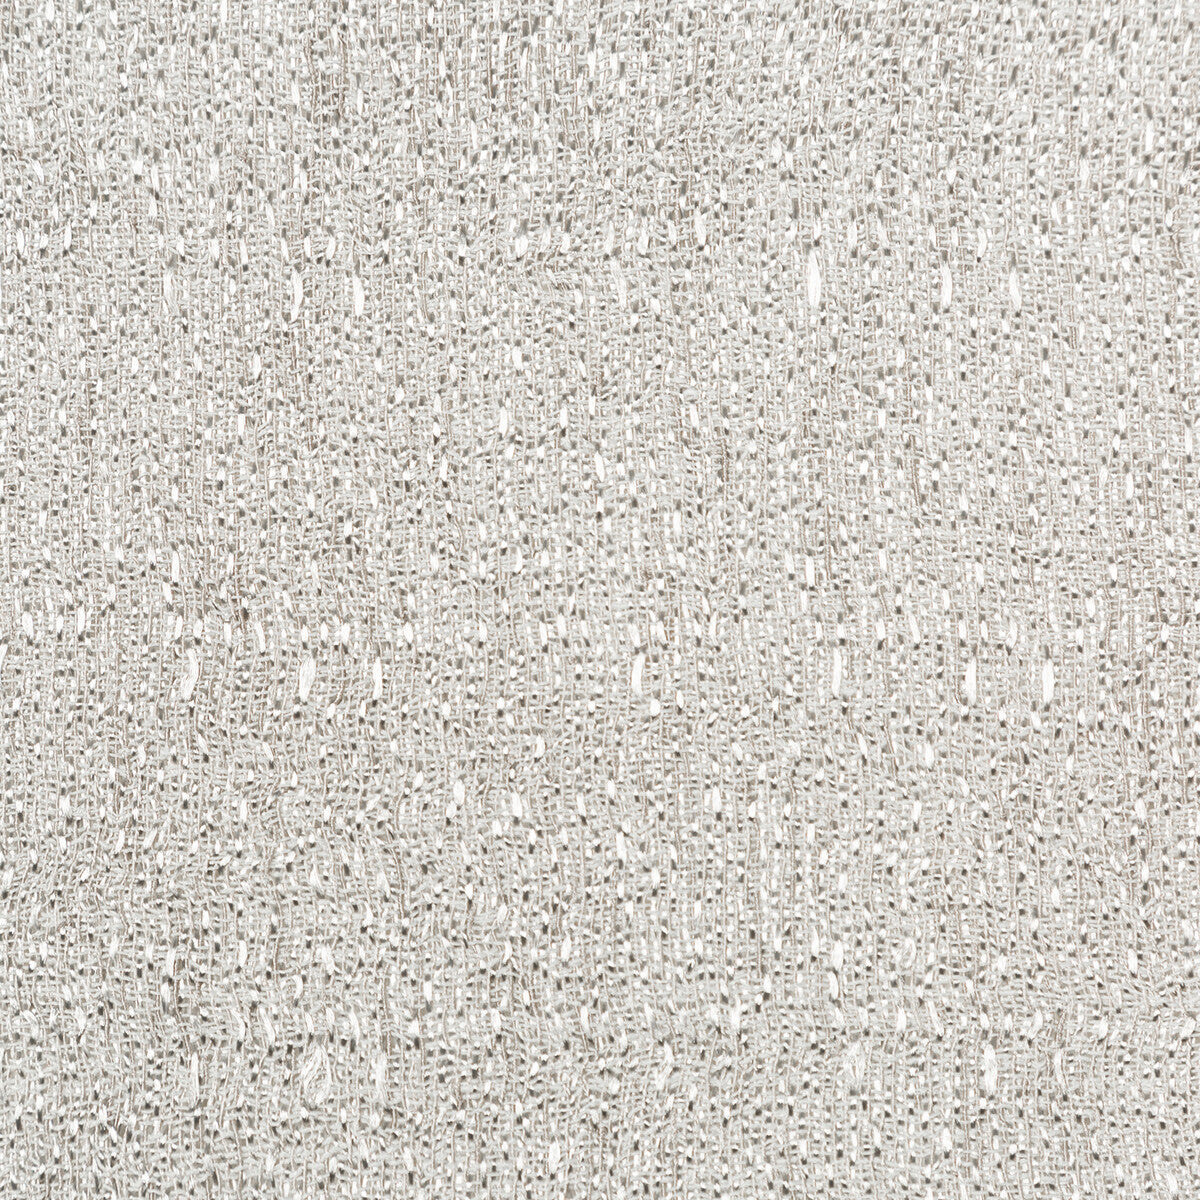 Kravet Basics fabric in 4764-11 color - pattern 4764.11.0 - by Kravet Basics